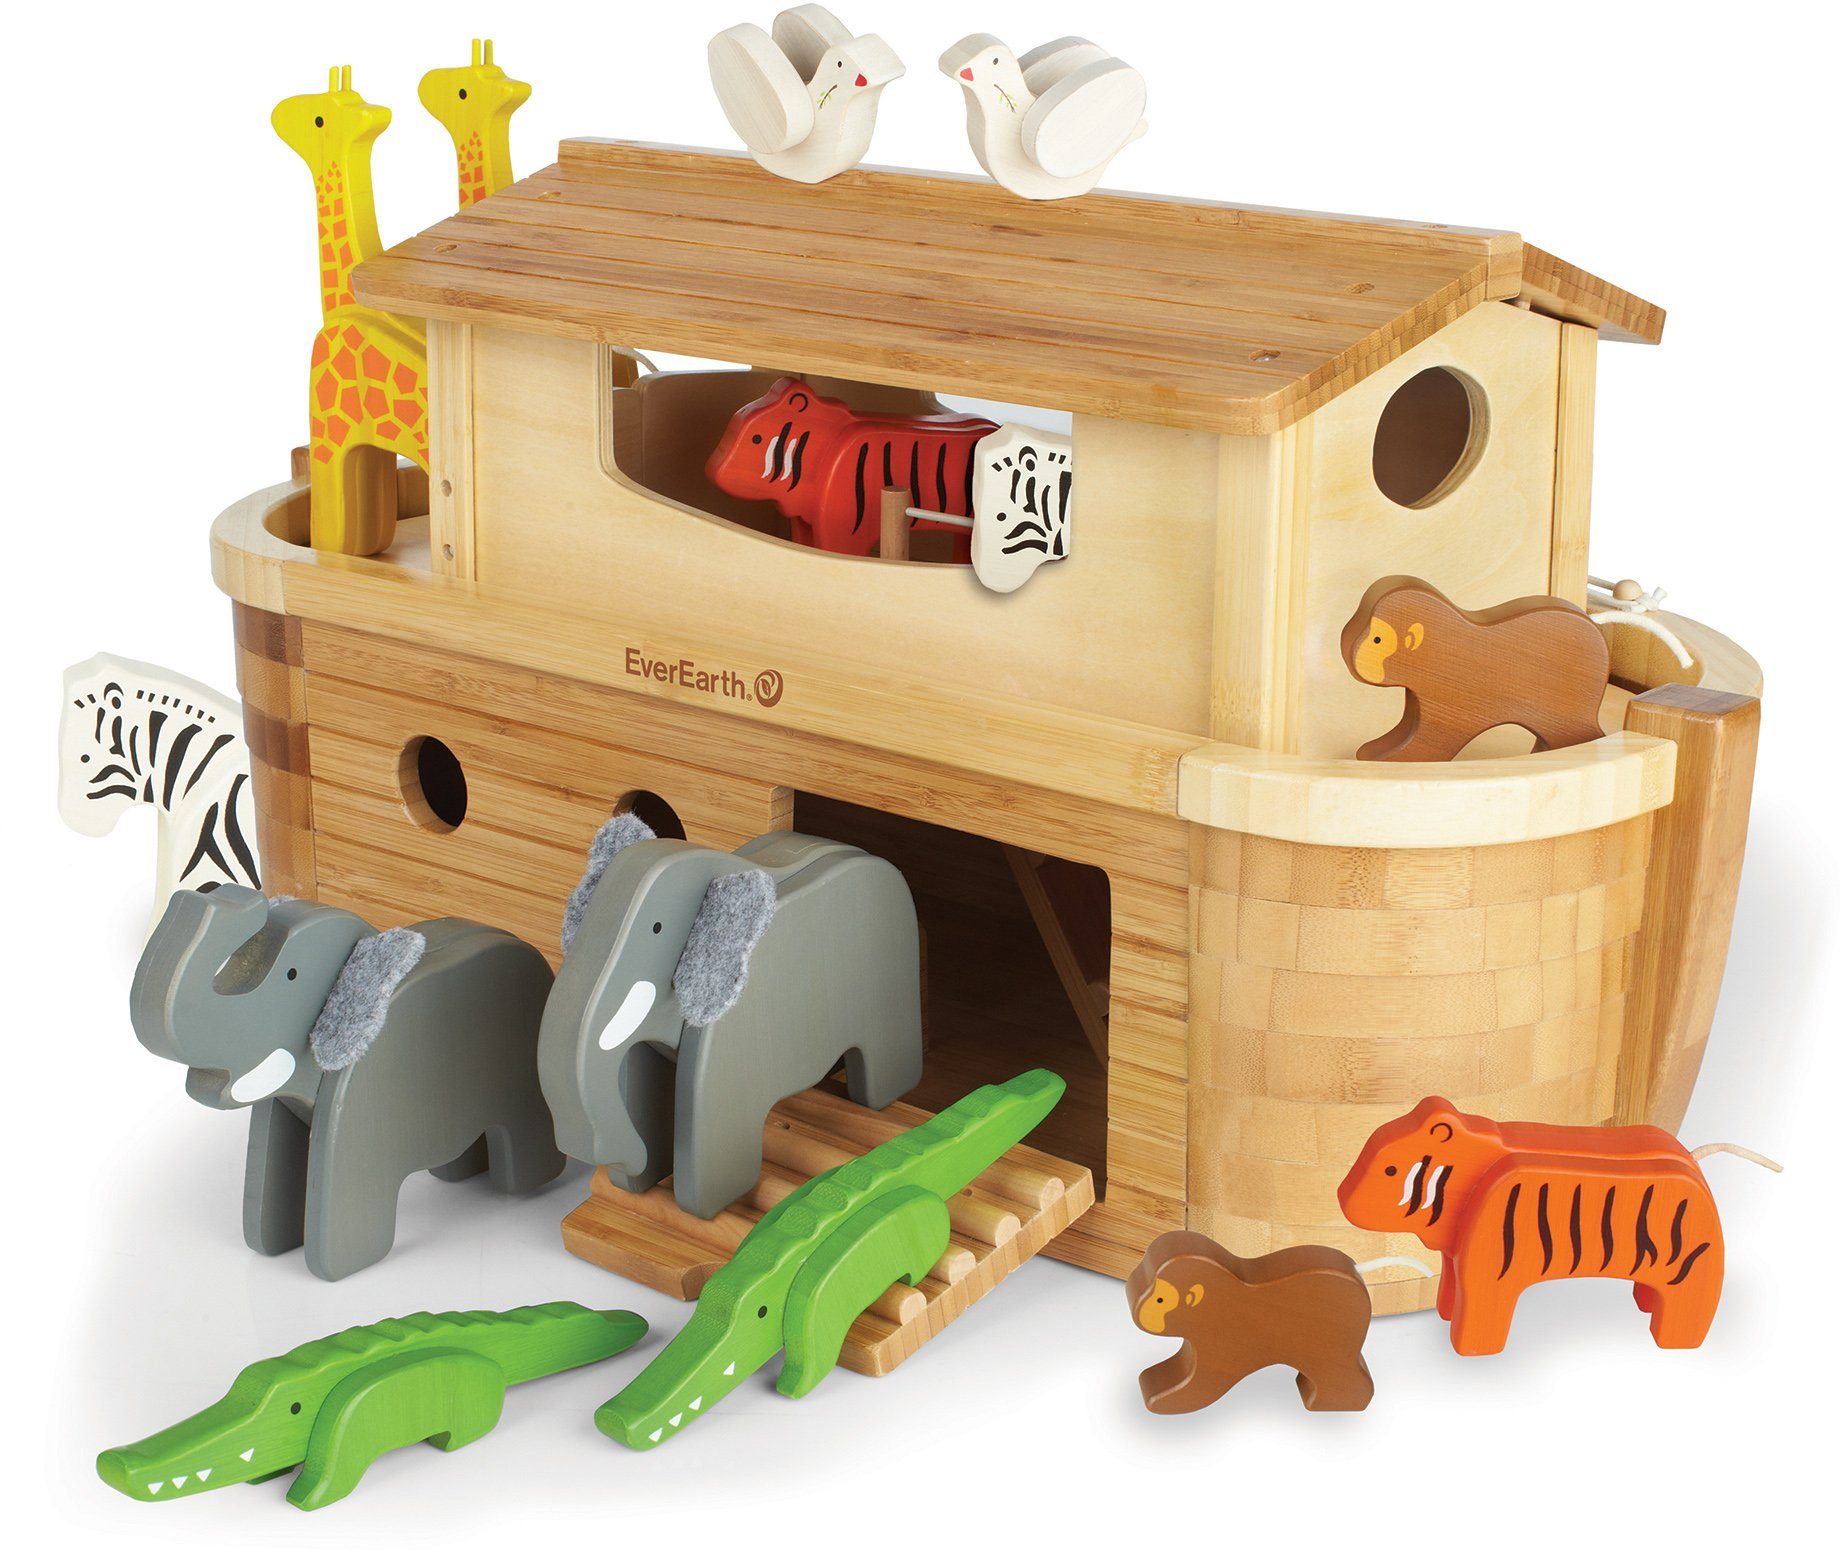 Everearth EverEarth® houten speelgoed, Grote ark van Noach met 14 dieren